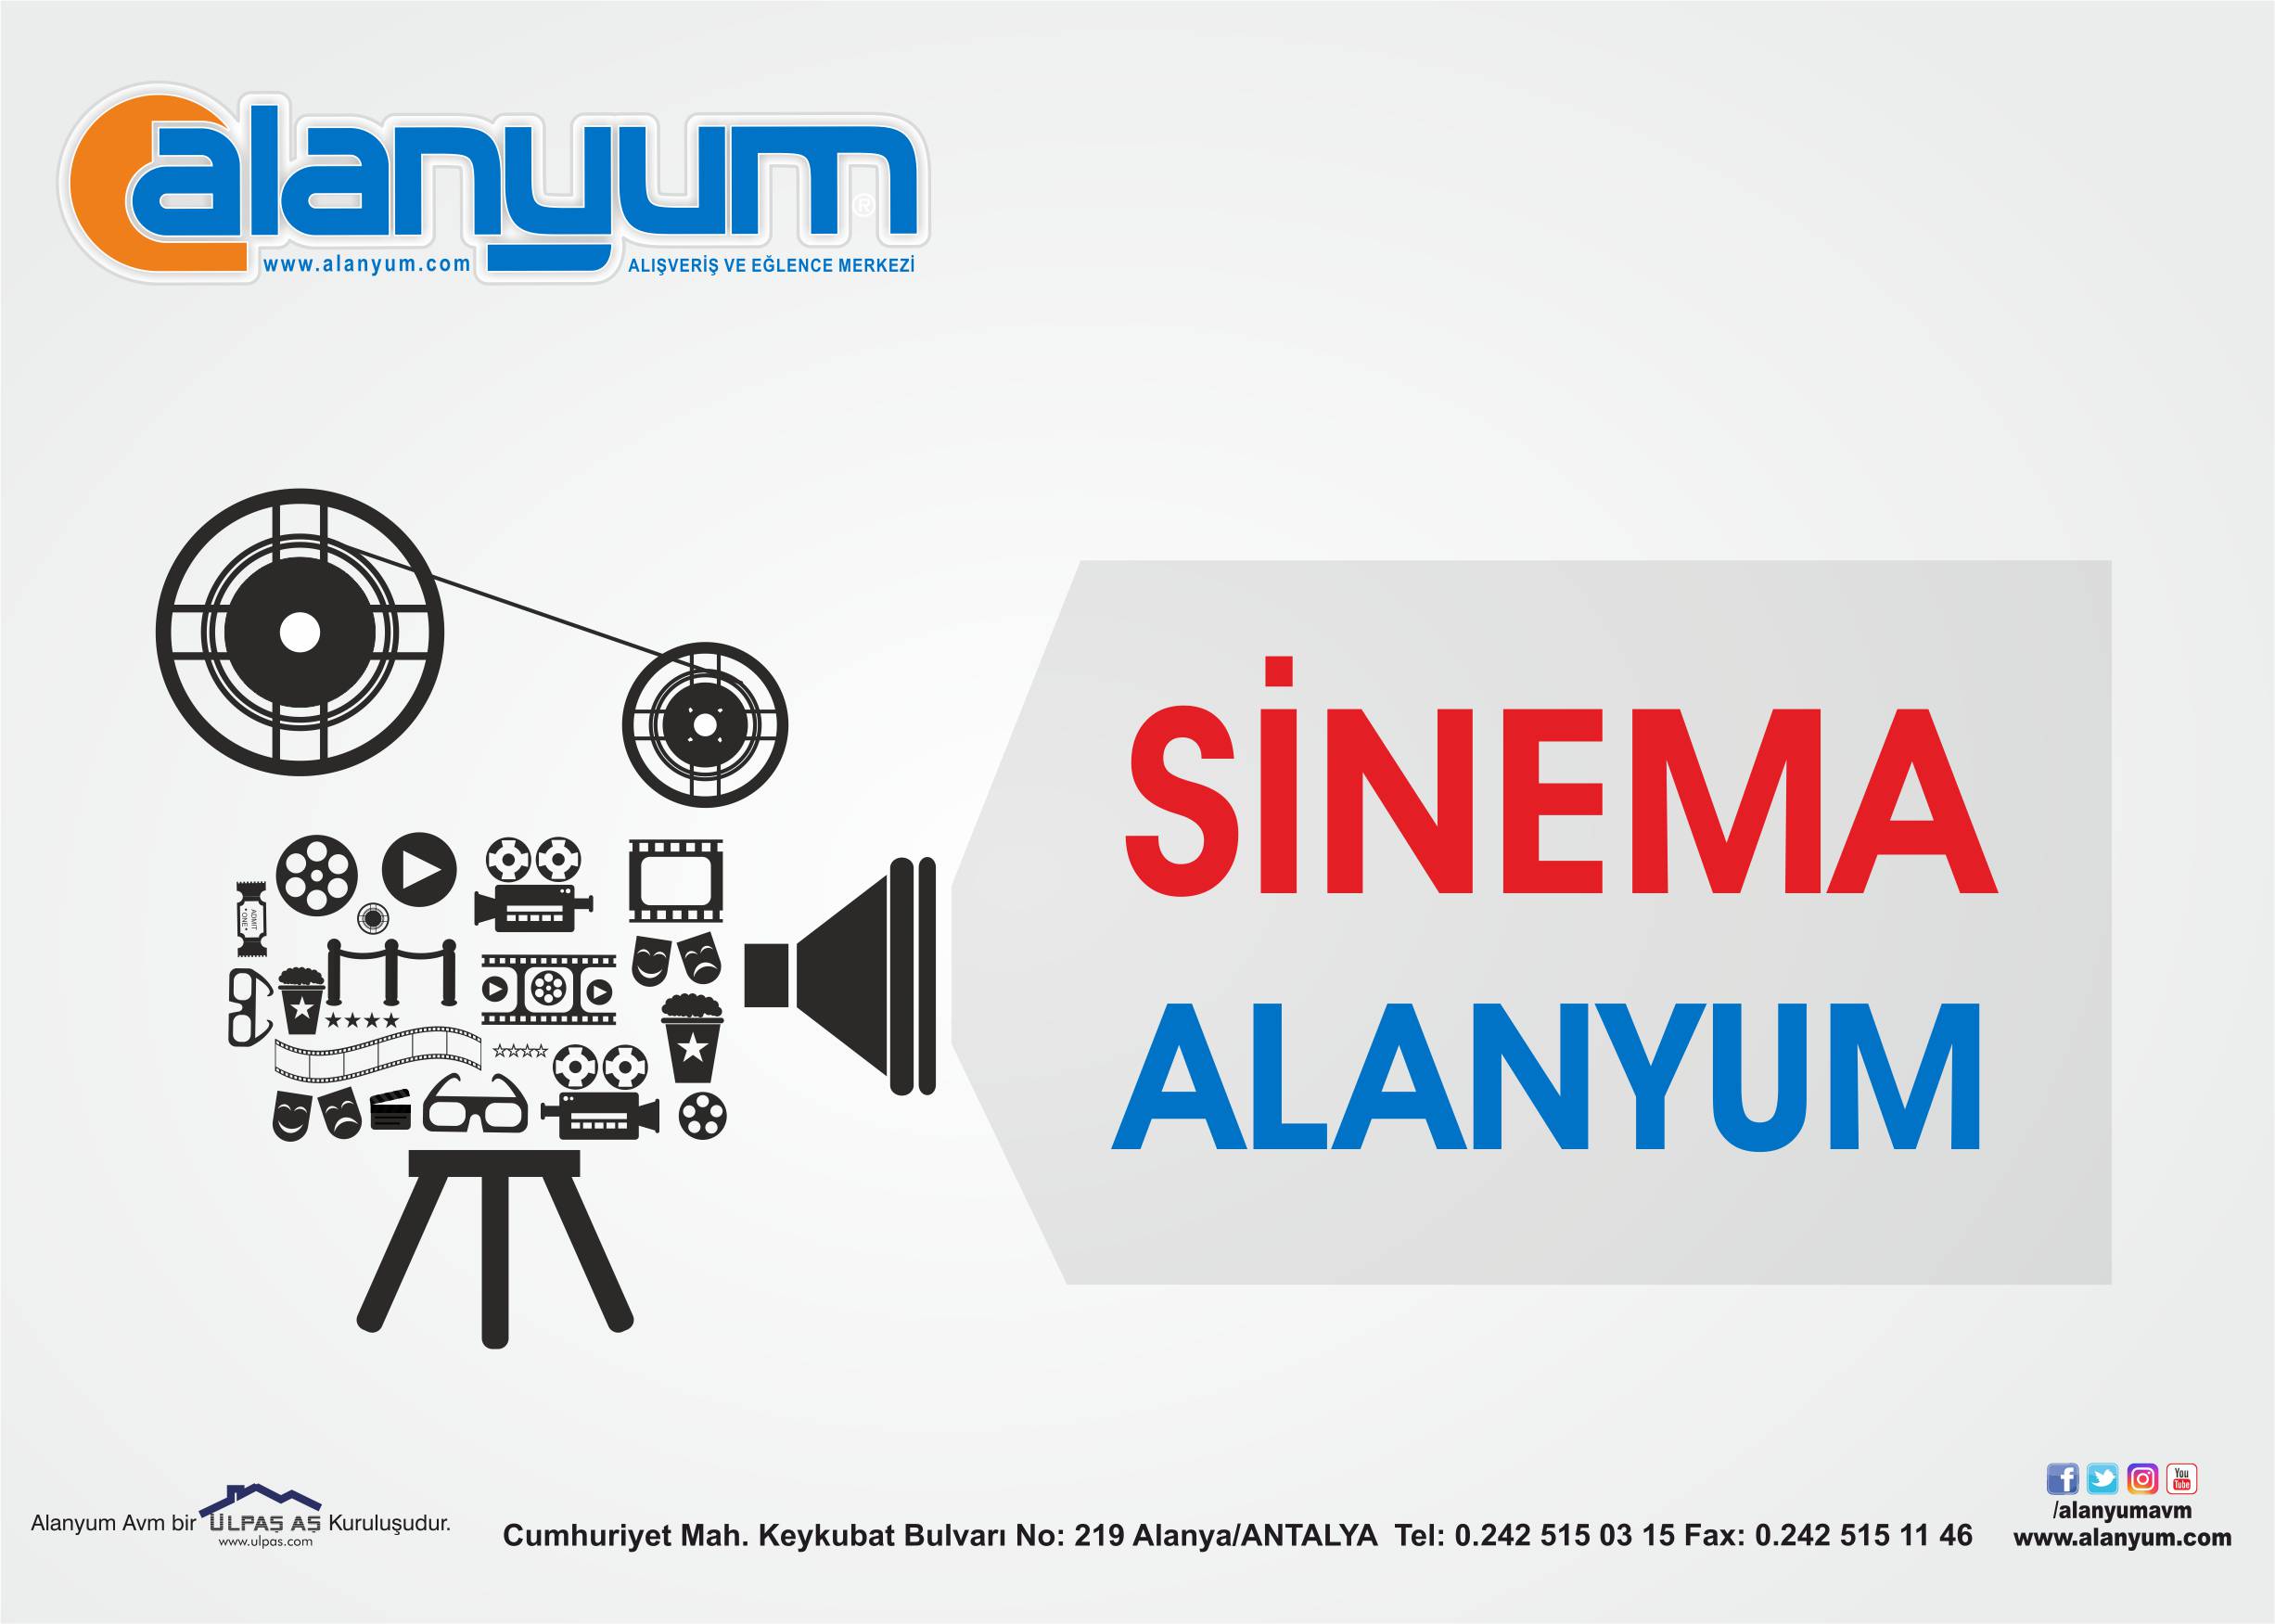 Alanyum AVM, yeni markası olan Sinema Alanyum ile eşsiz sinema keyfi için ziyaretçilerini ağırlamaya hazır.